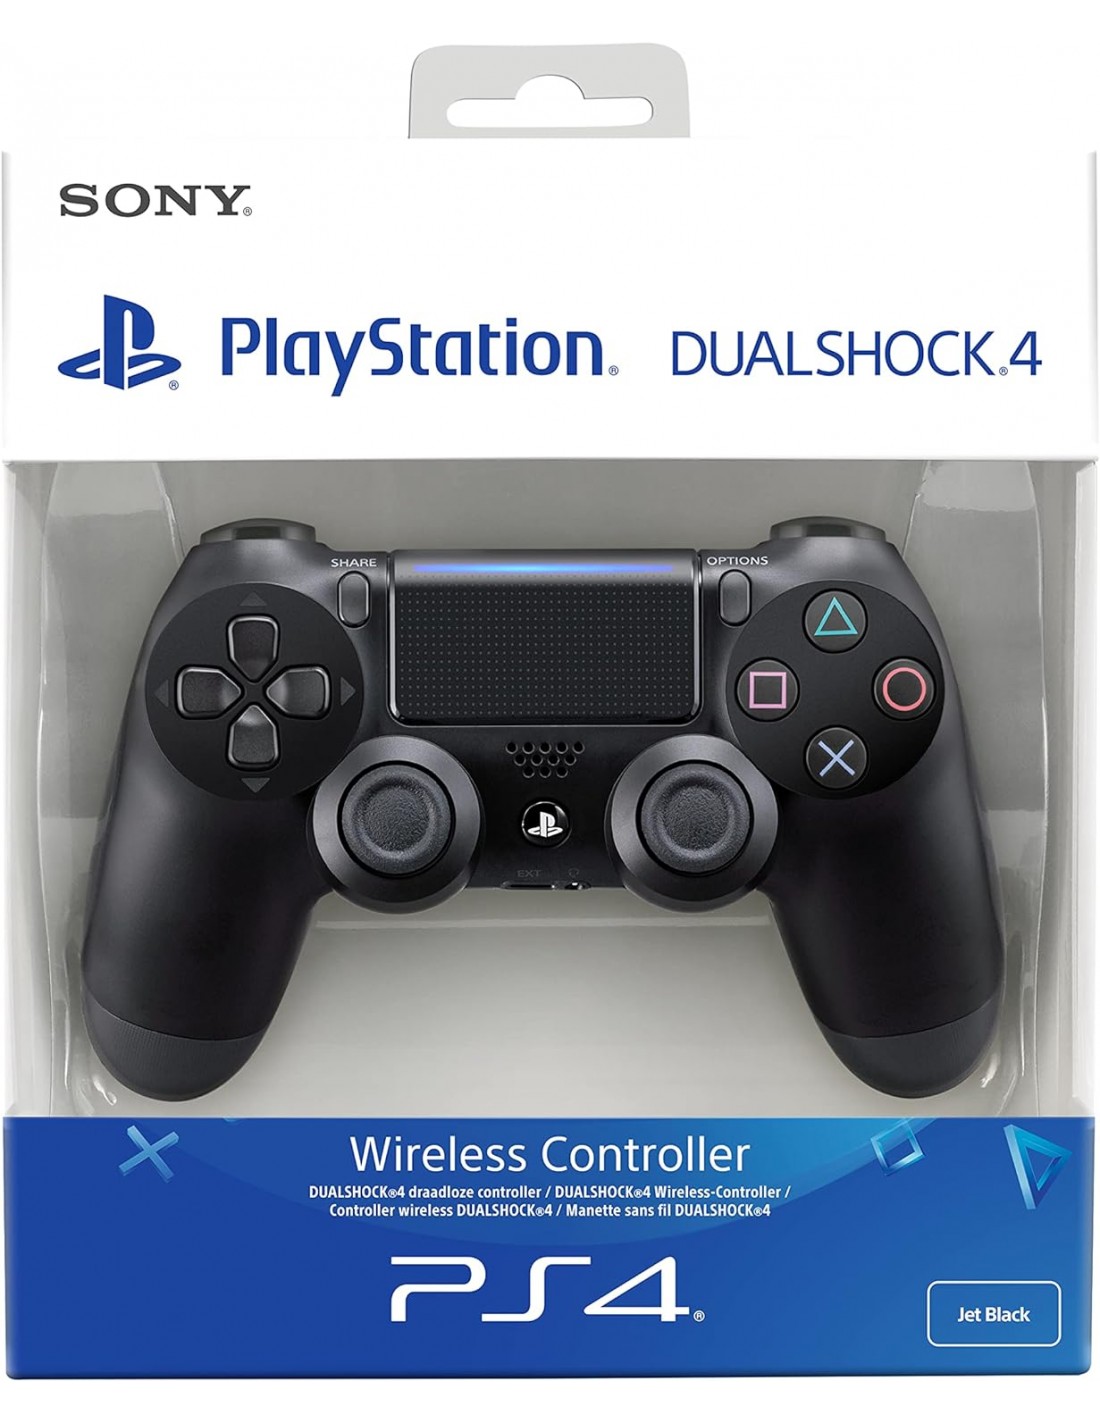 DualShock 4, cómo es el mando de la PlayStation 4